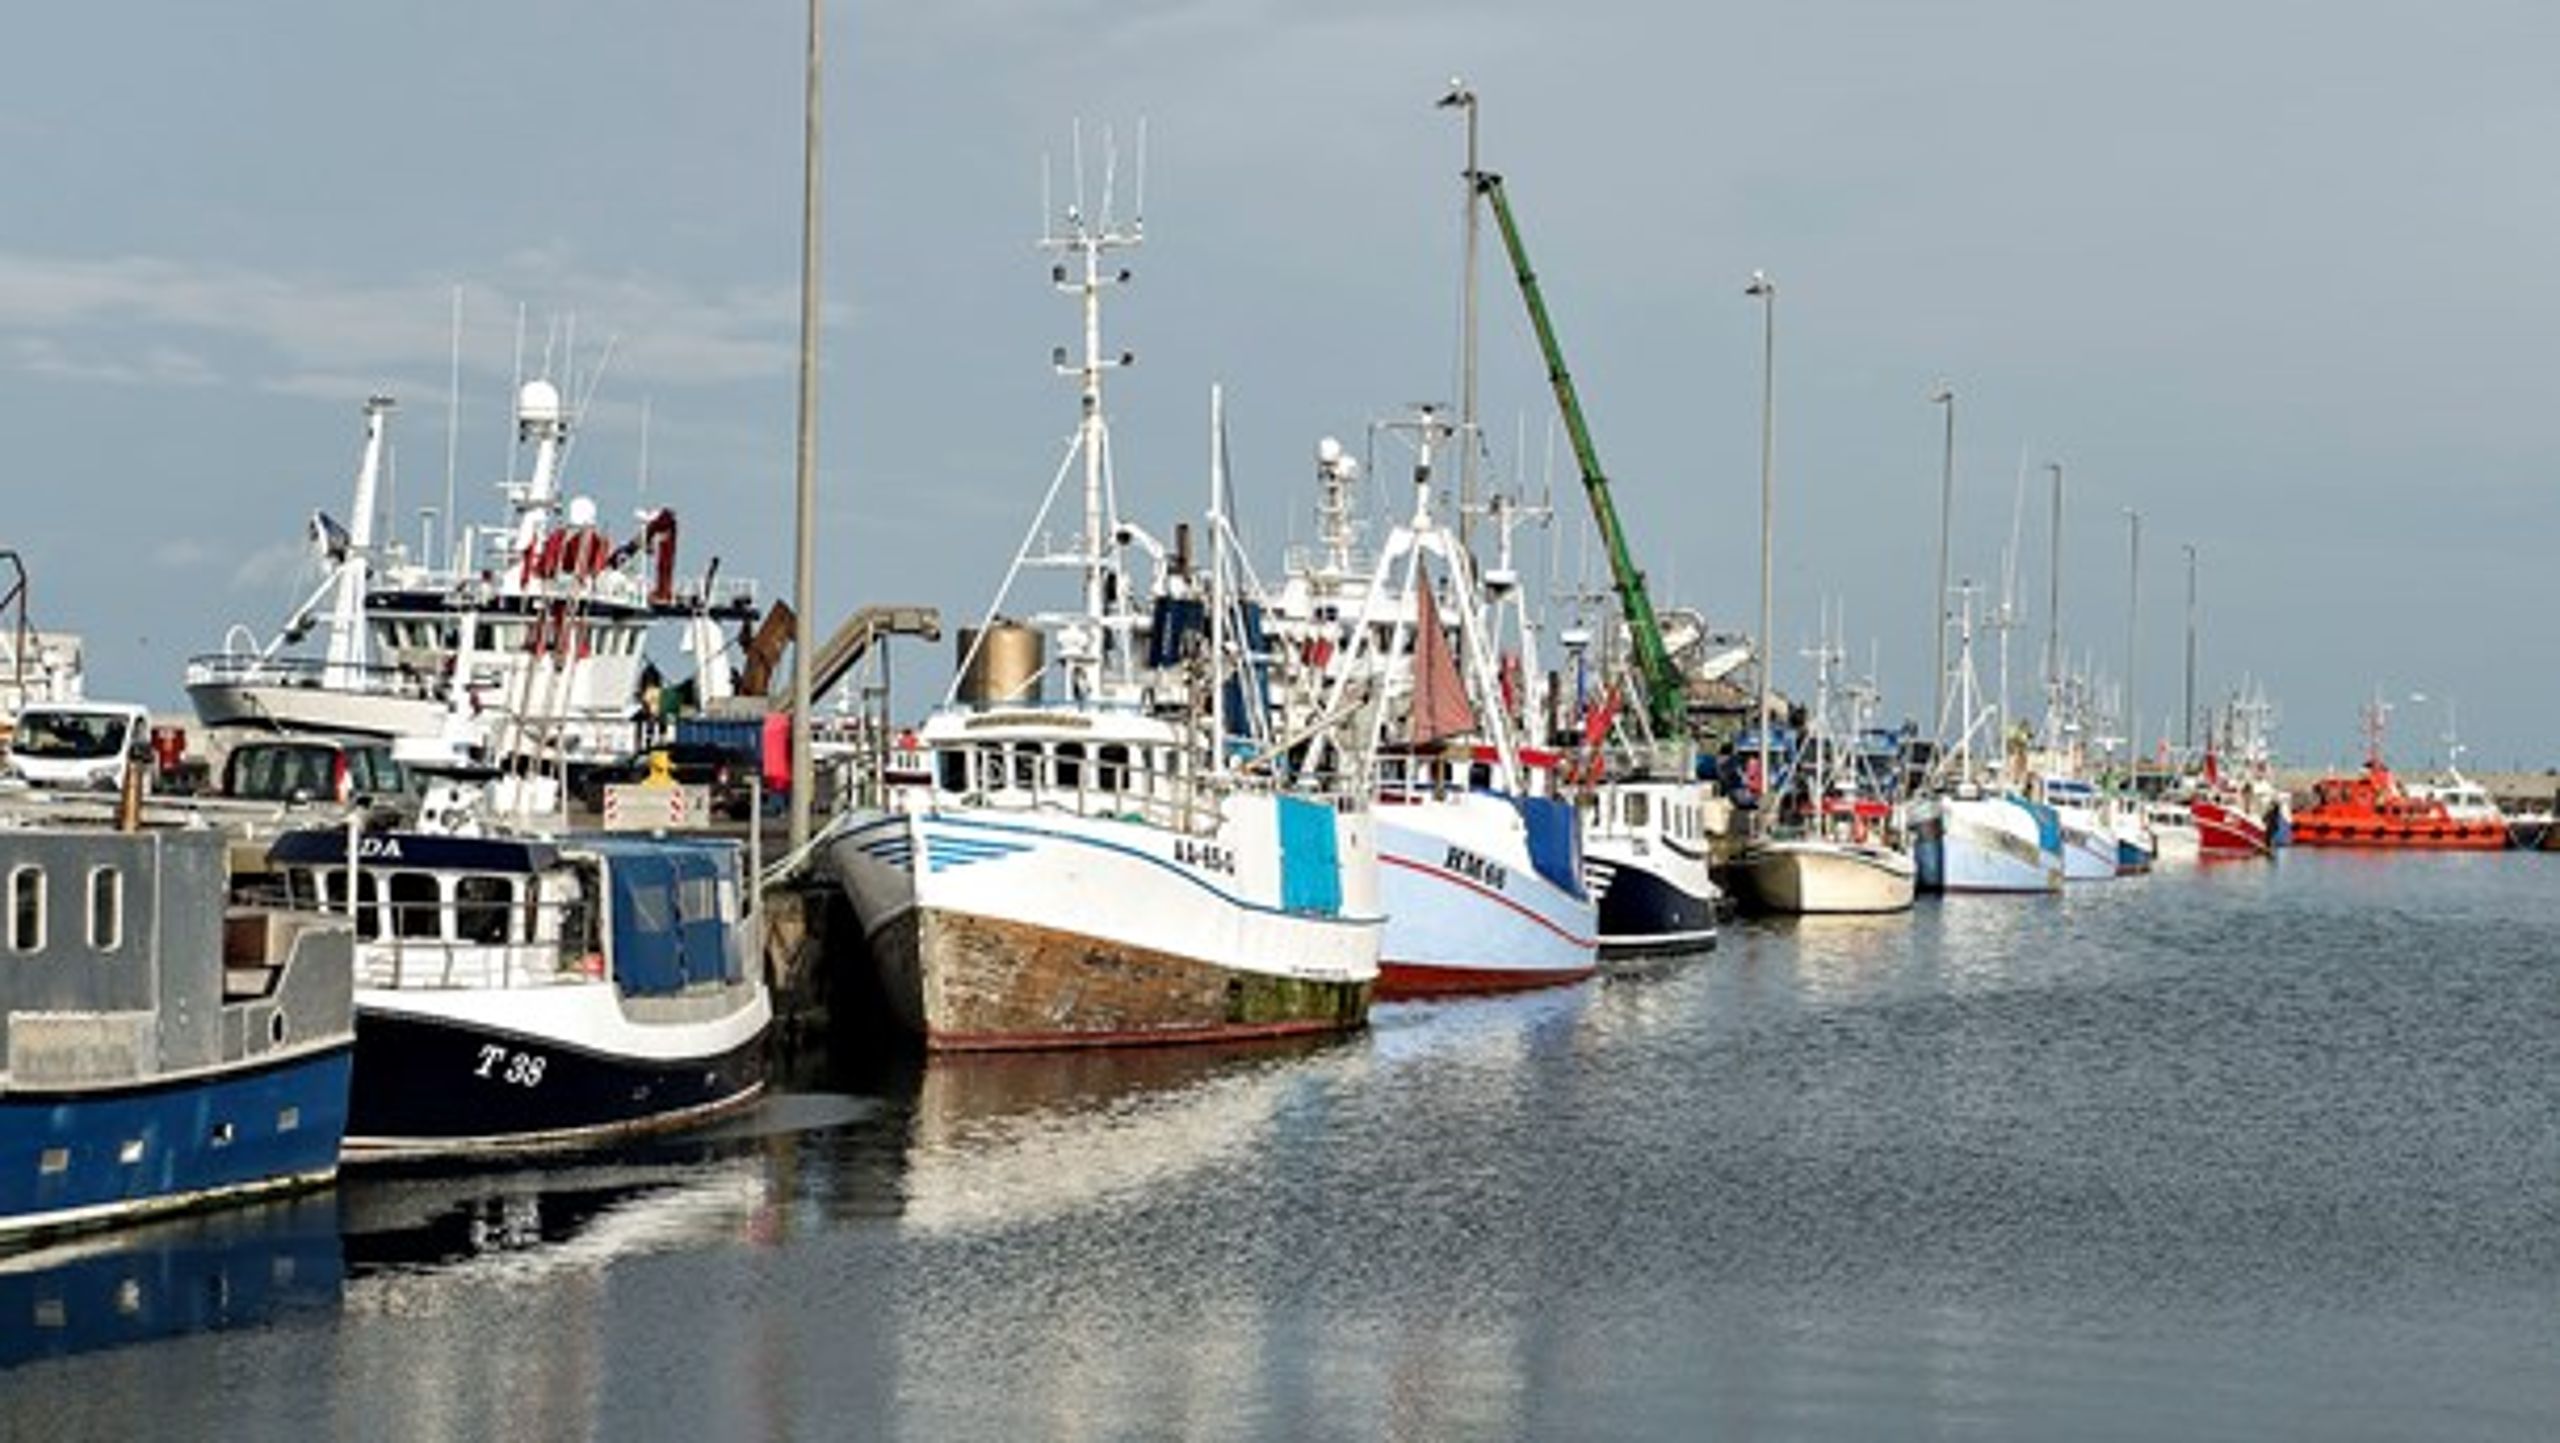 Omkring 50 fiskefartøjer kan få deres omsætning mere end halveret, hvis Storbritanniens træder ud af EU uden en aftale, viser ny rapport.